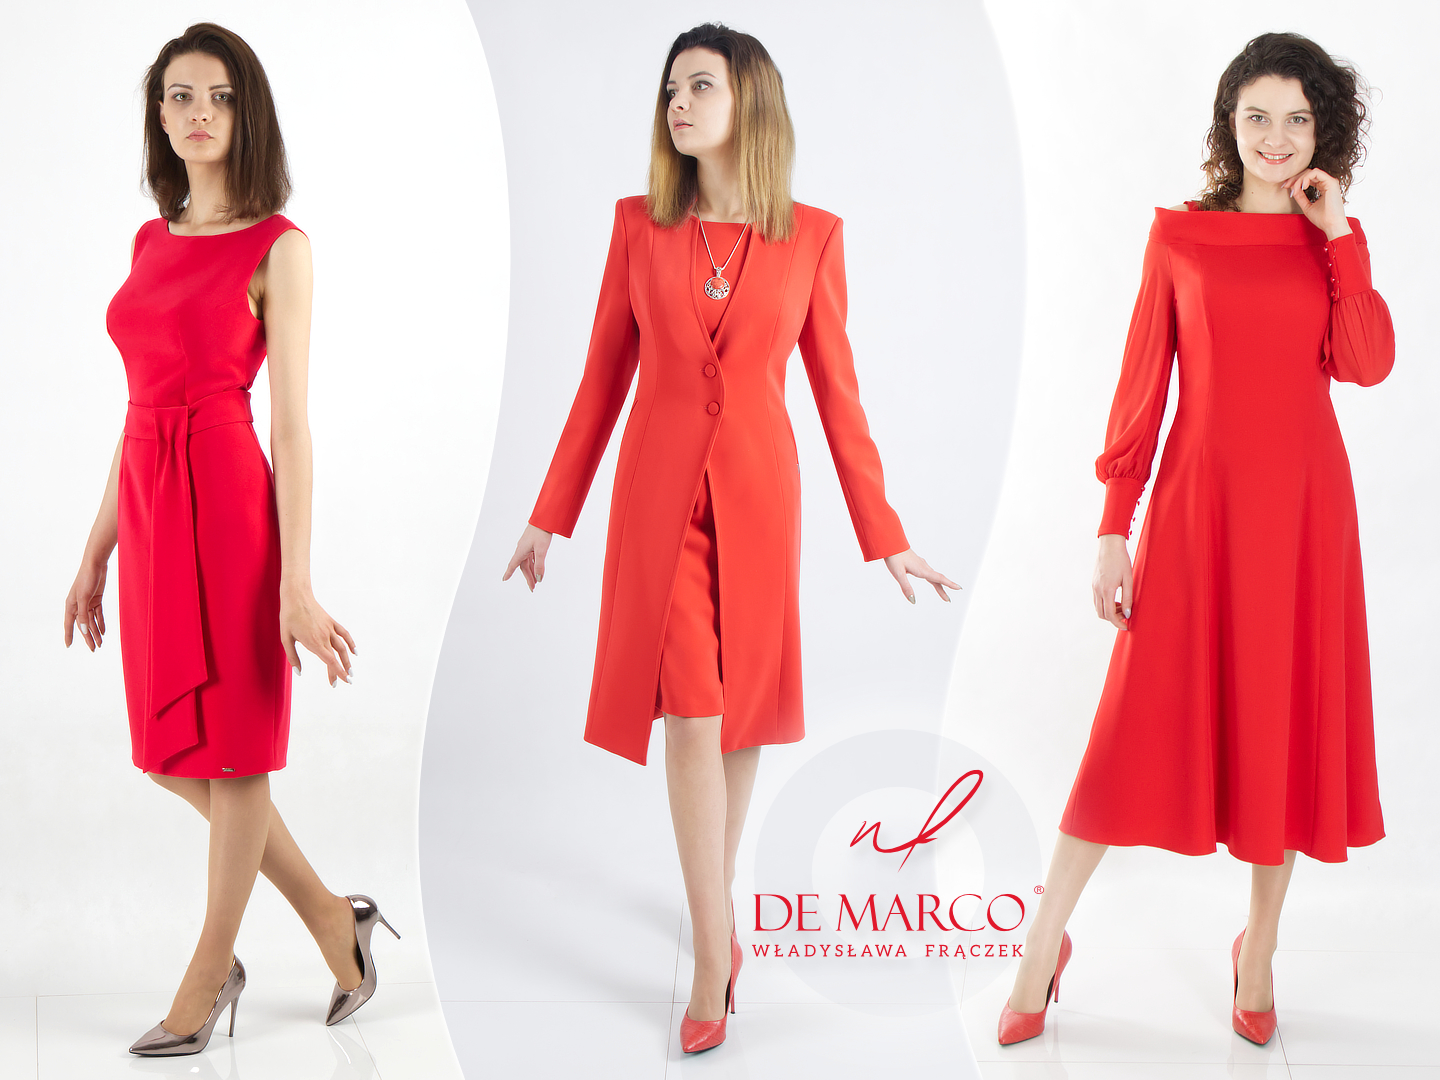 Eleganckie czerwone stylizacje De Marco. Komu pasują, z czy łączyć?